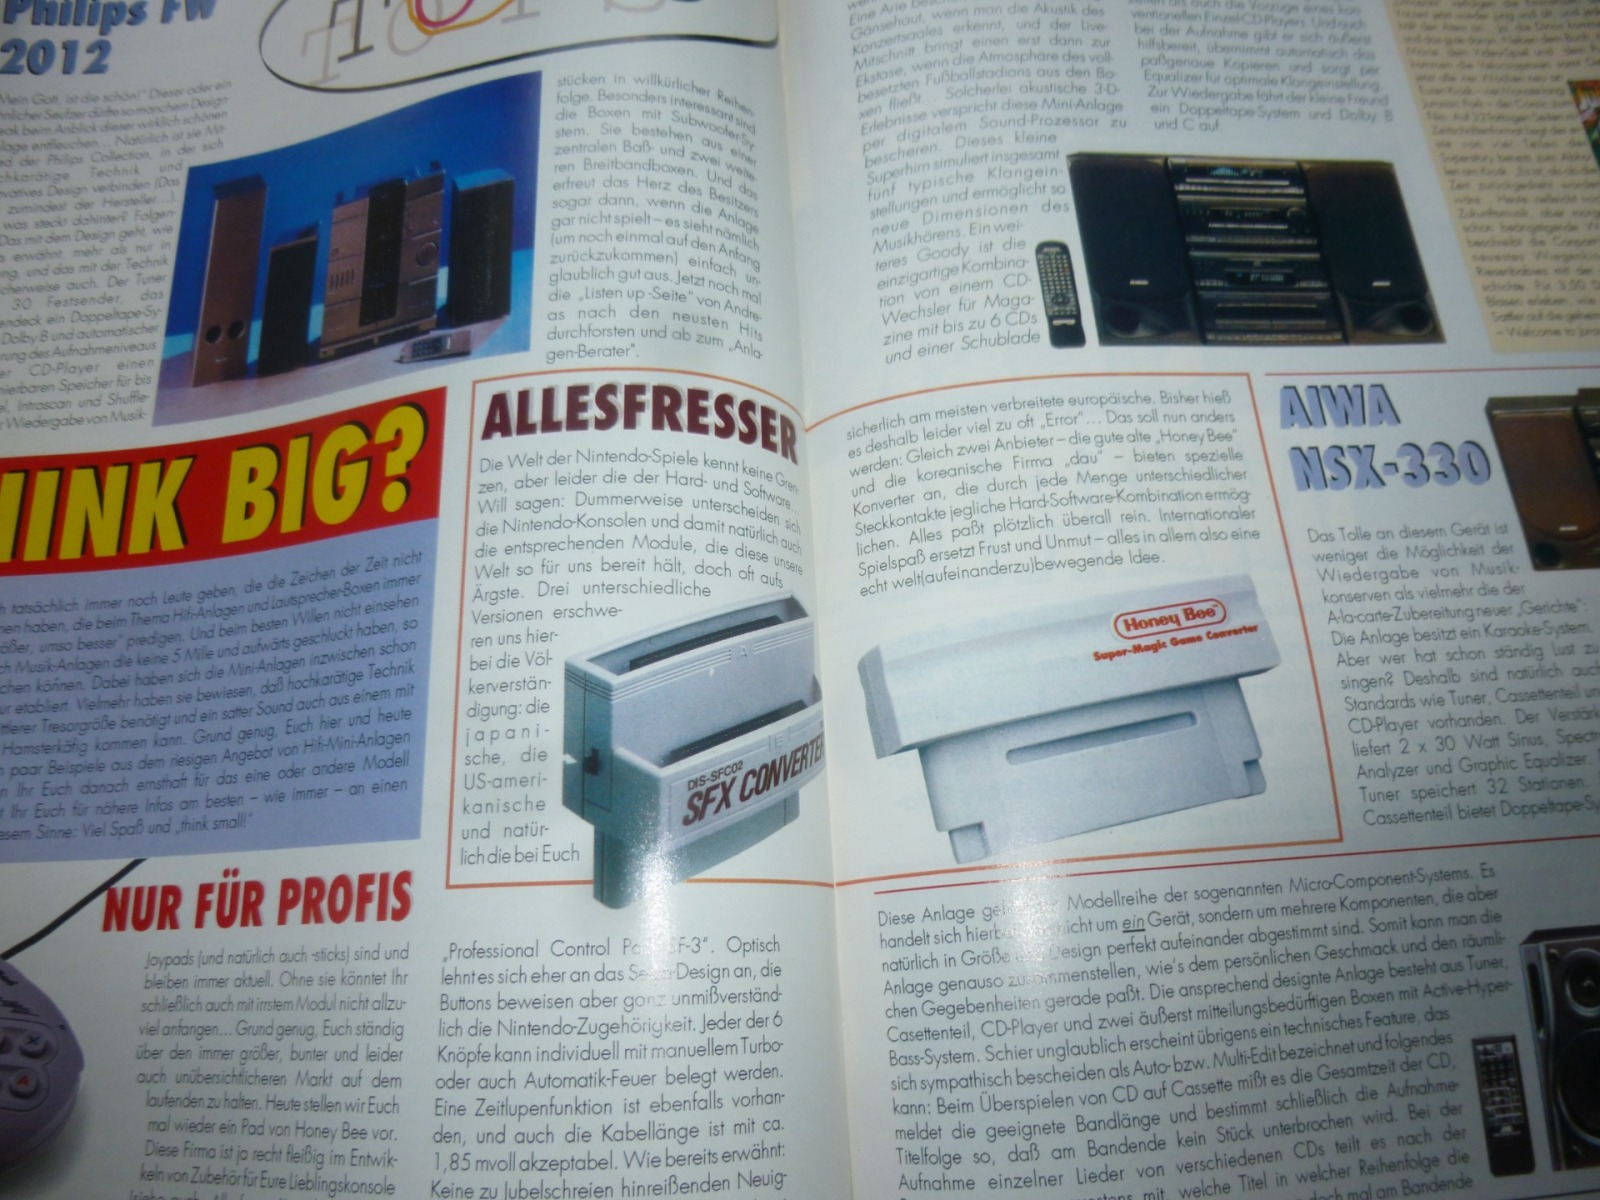 TOTAL Das unabhängige Magazin - 100 Nintendo - Ausgabe 9/93 1993 24